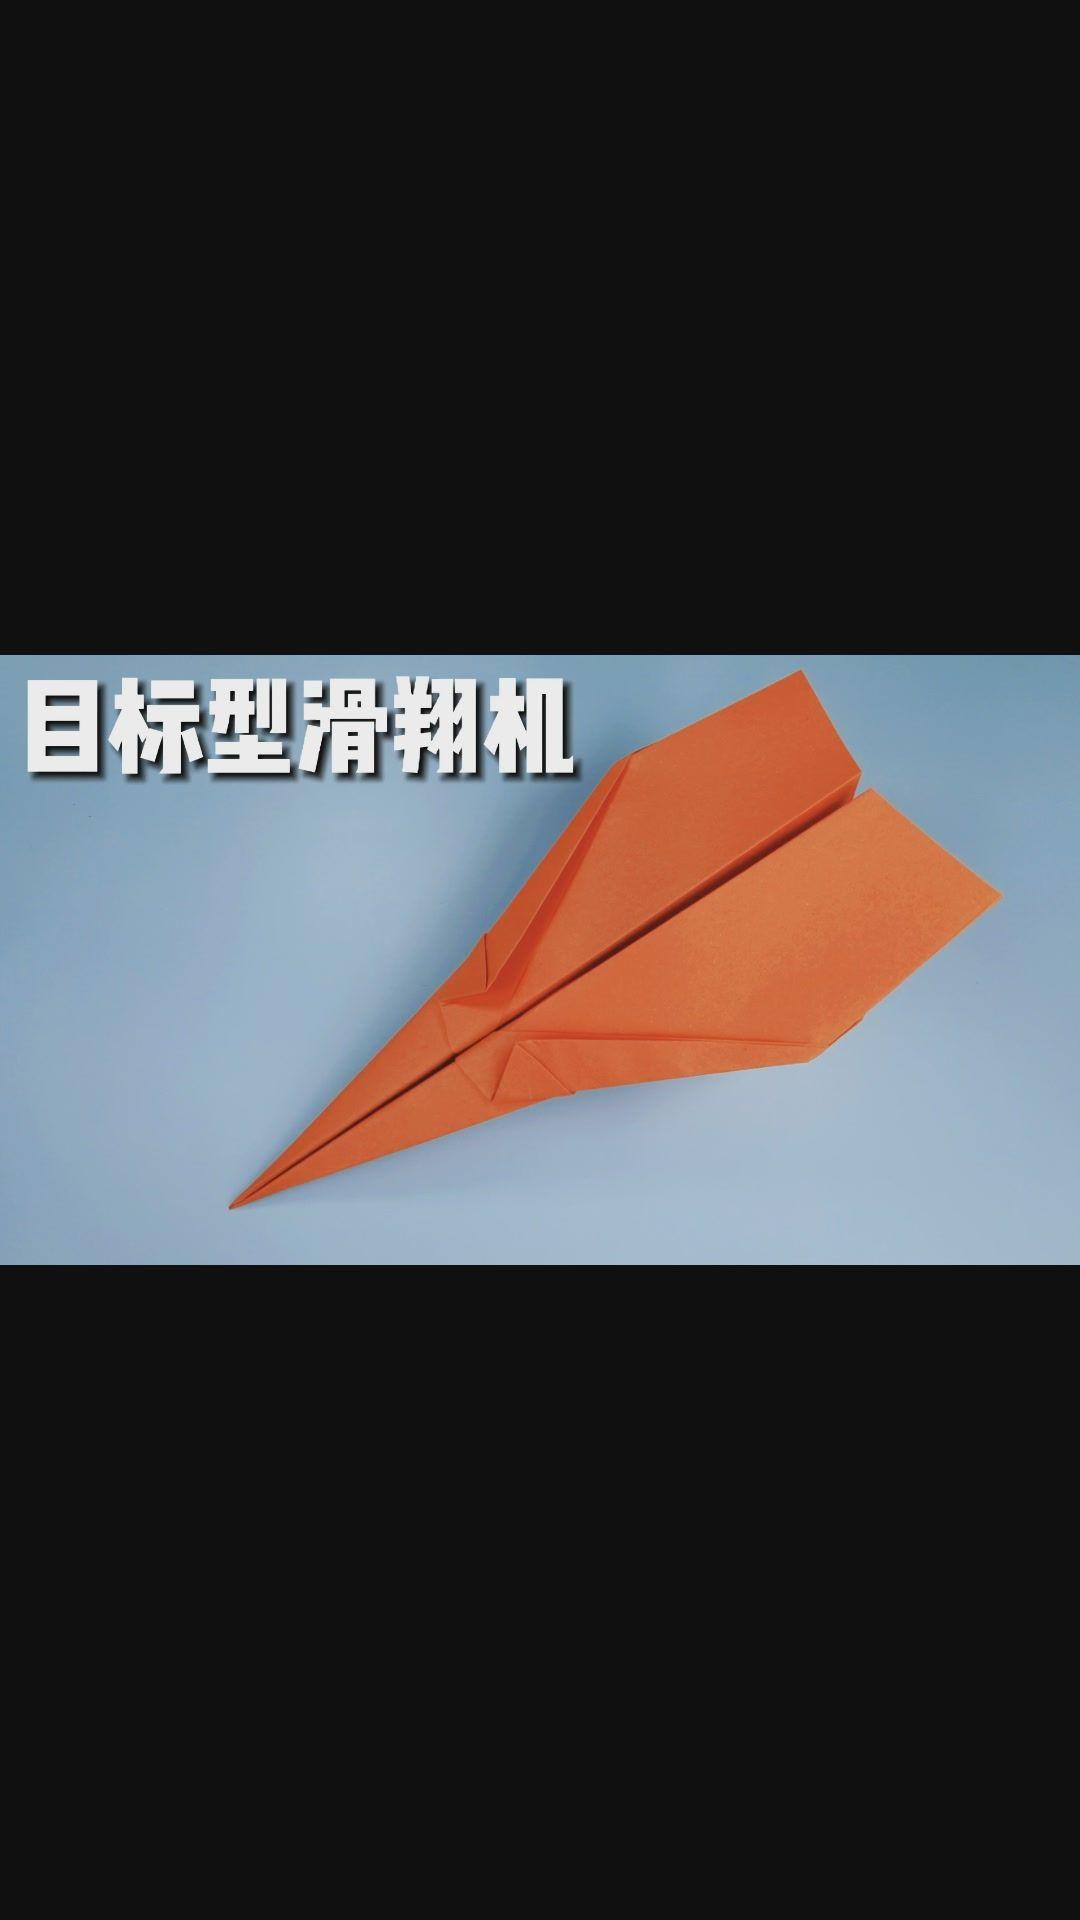 播放纸飞机的视频特别简单_播放纸飞机的视频特别简单怎么回事